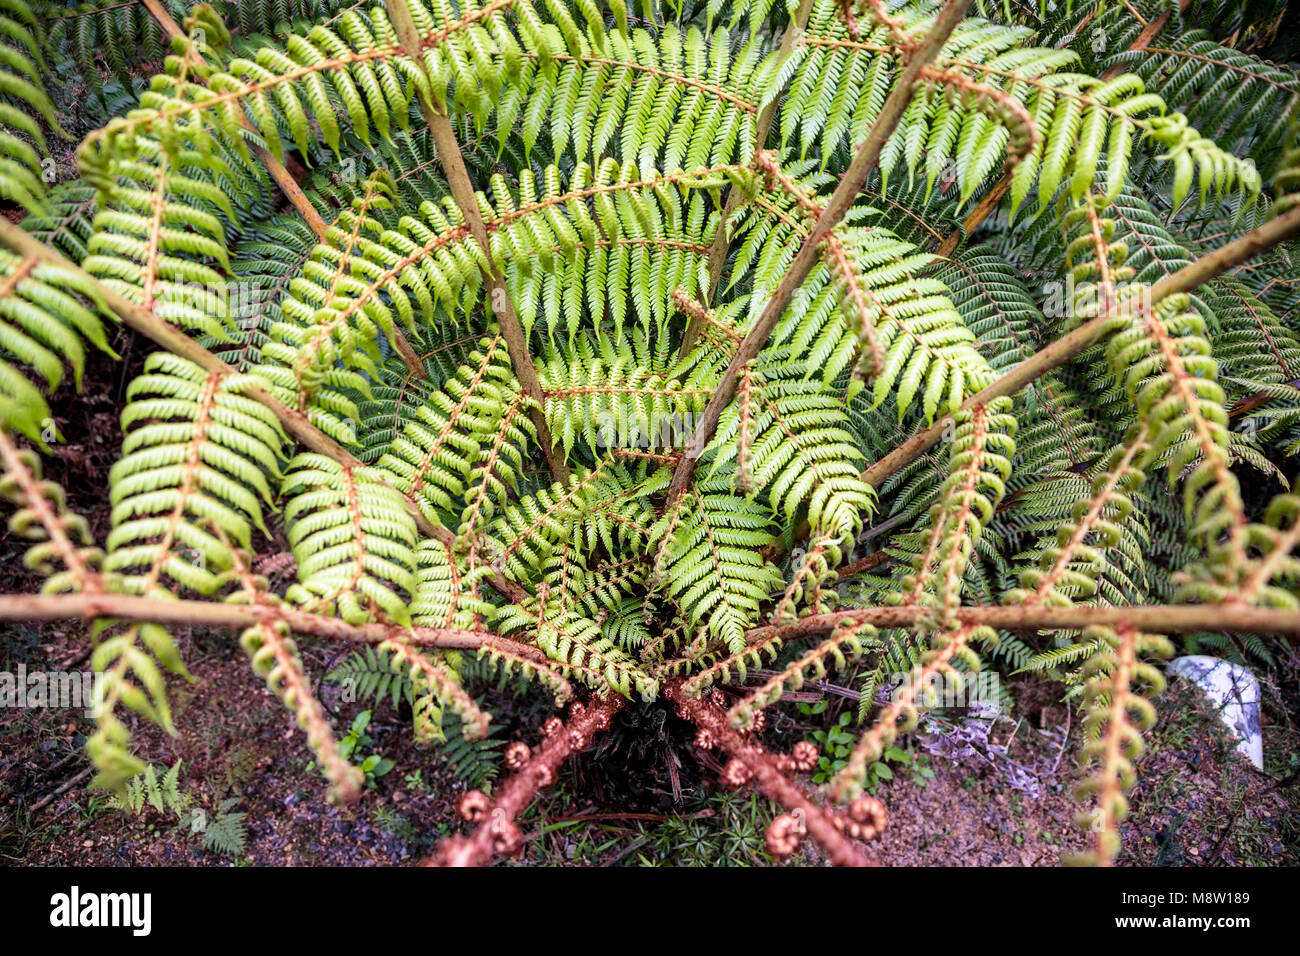 Ponga tree in Maori, silver fern, Cyathea Dealbata, New Zealand Stock Photo